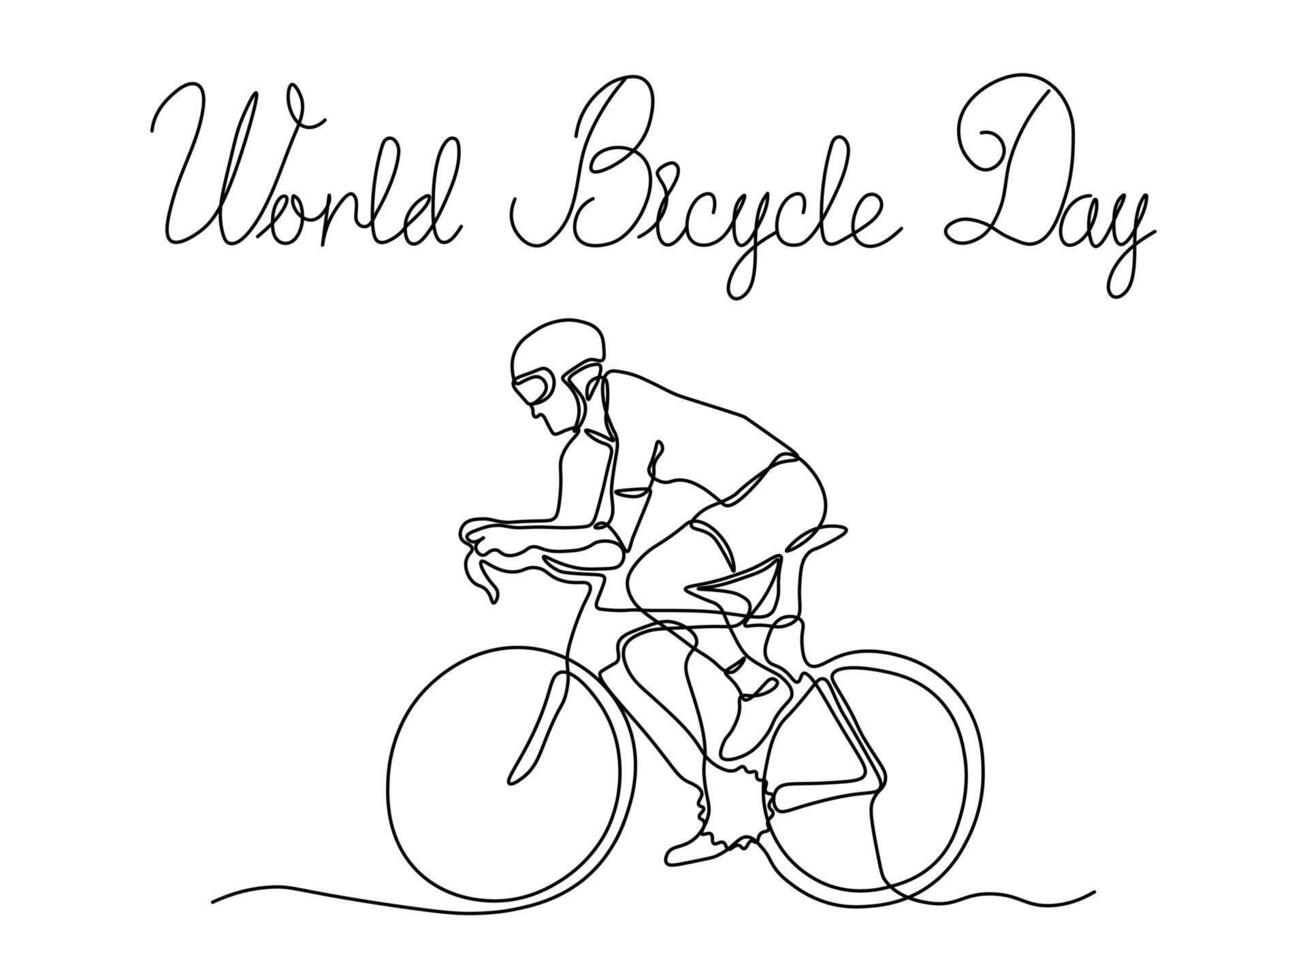 Welt Fahrrad Tag. abstrakt Radfahrer, Athlet auf ein Fahrrad, kontinuierlich einer Linie Kunst Hand Zeichnung skizzieren vektor